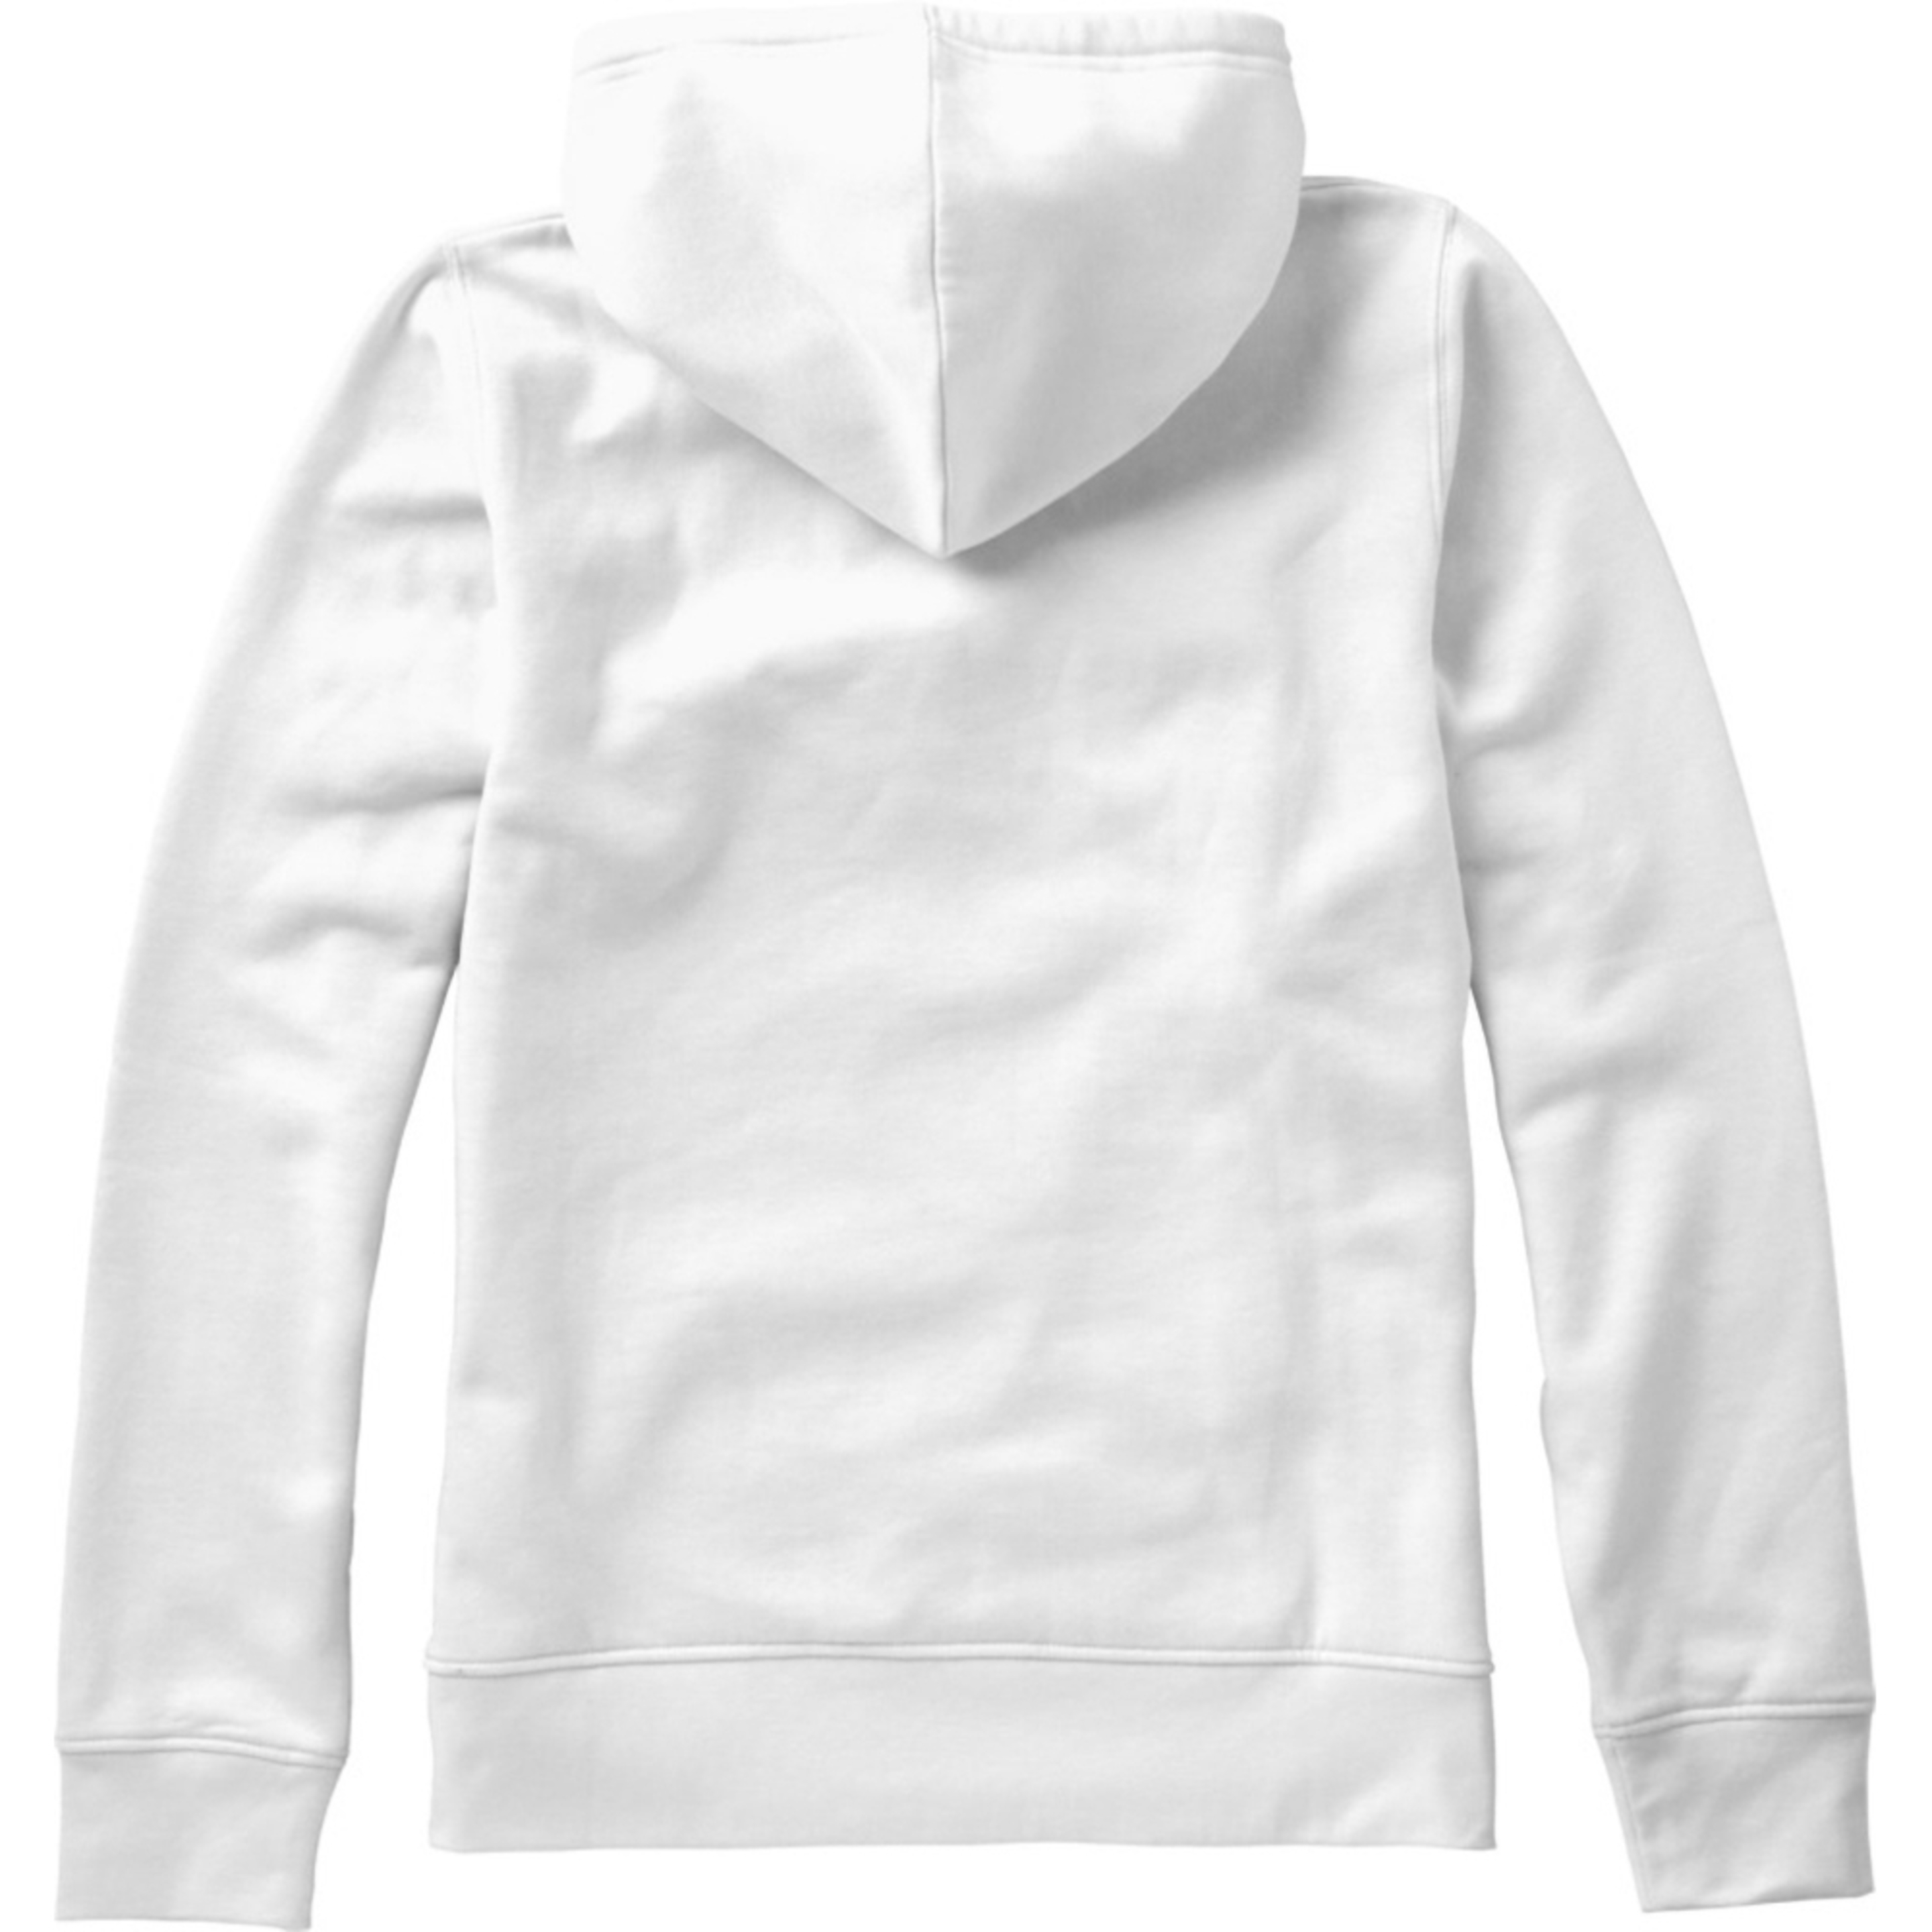 Camisola Com Capuz Para Senhoras/ Senhoras Slazenger (Branco)